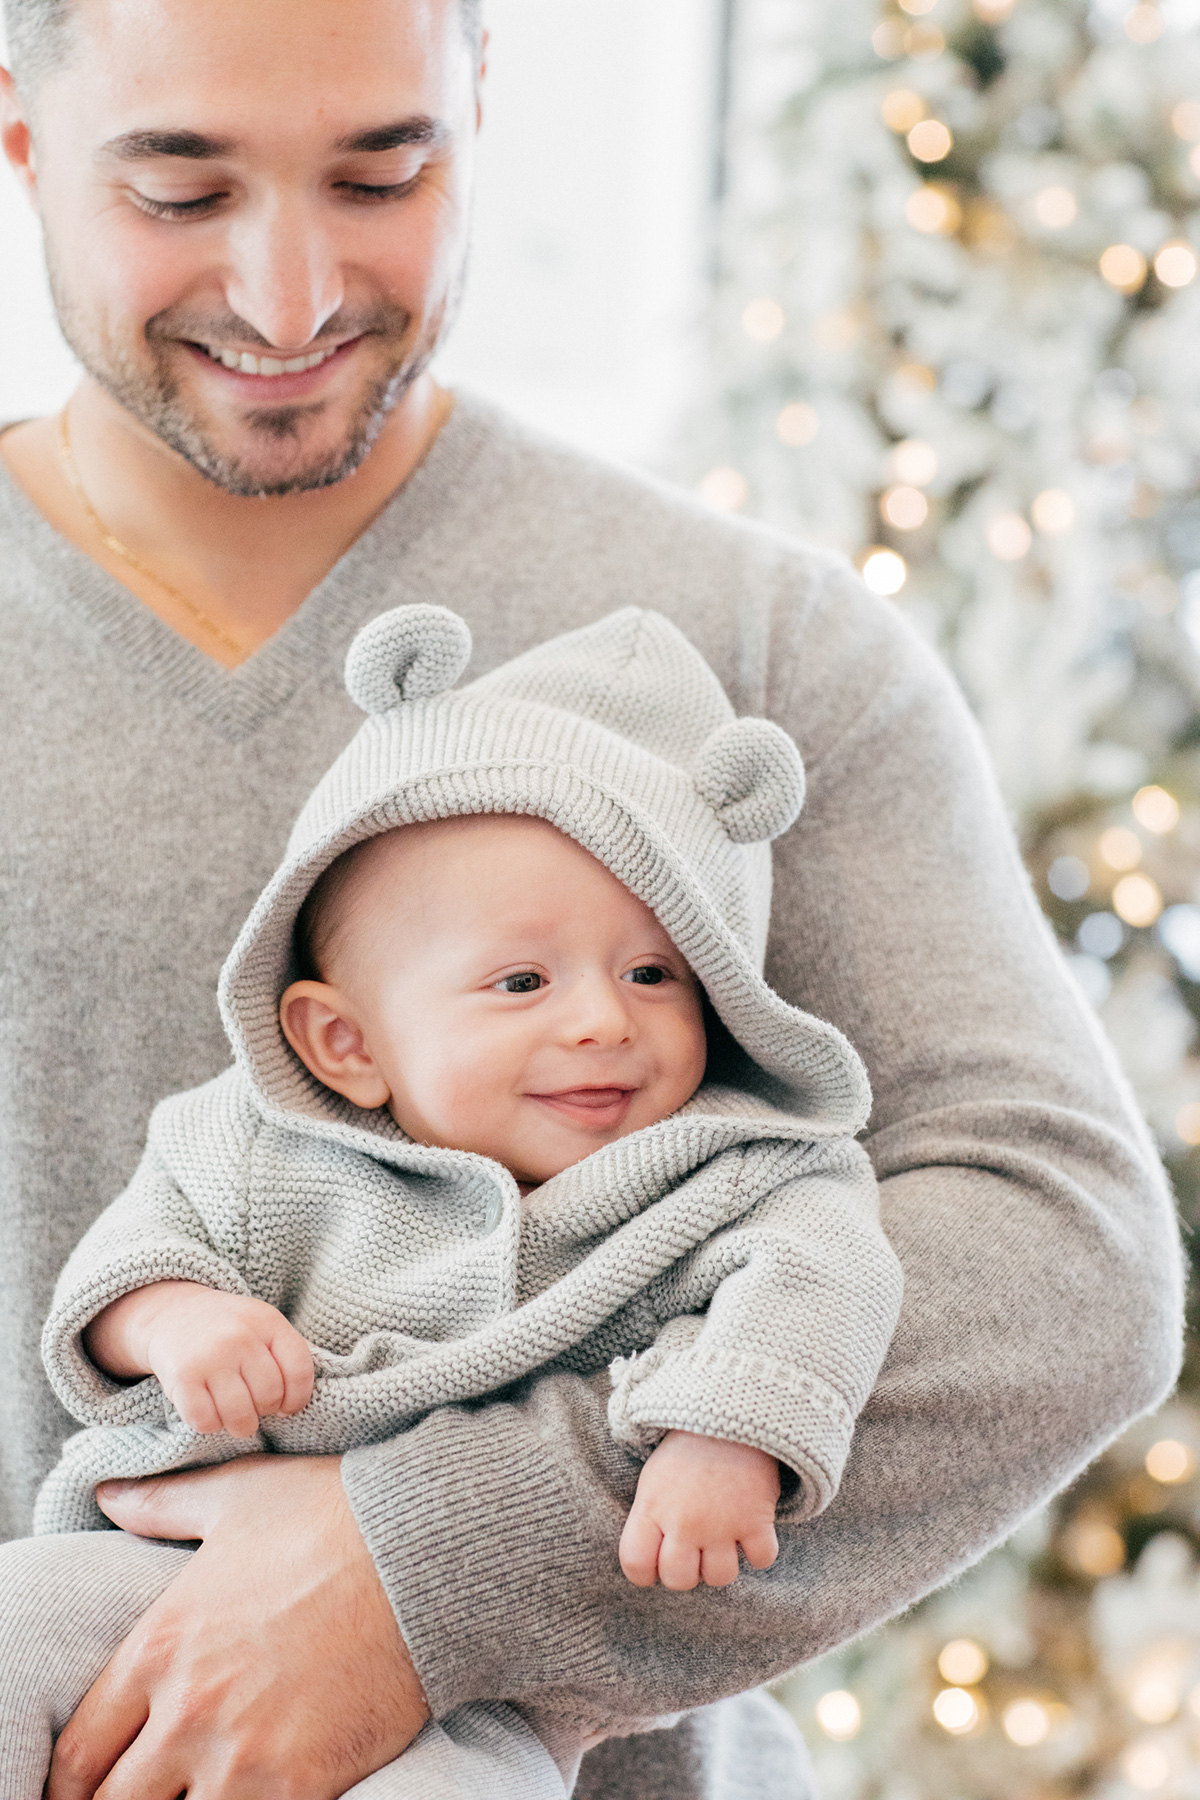 https://www.eatsleepwear.com/wp-content/uploads/2018/12/07-16855-post/eatsleepwear-gifts-giftguide-baby-family-holiday-1.jpg